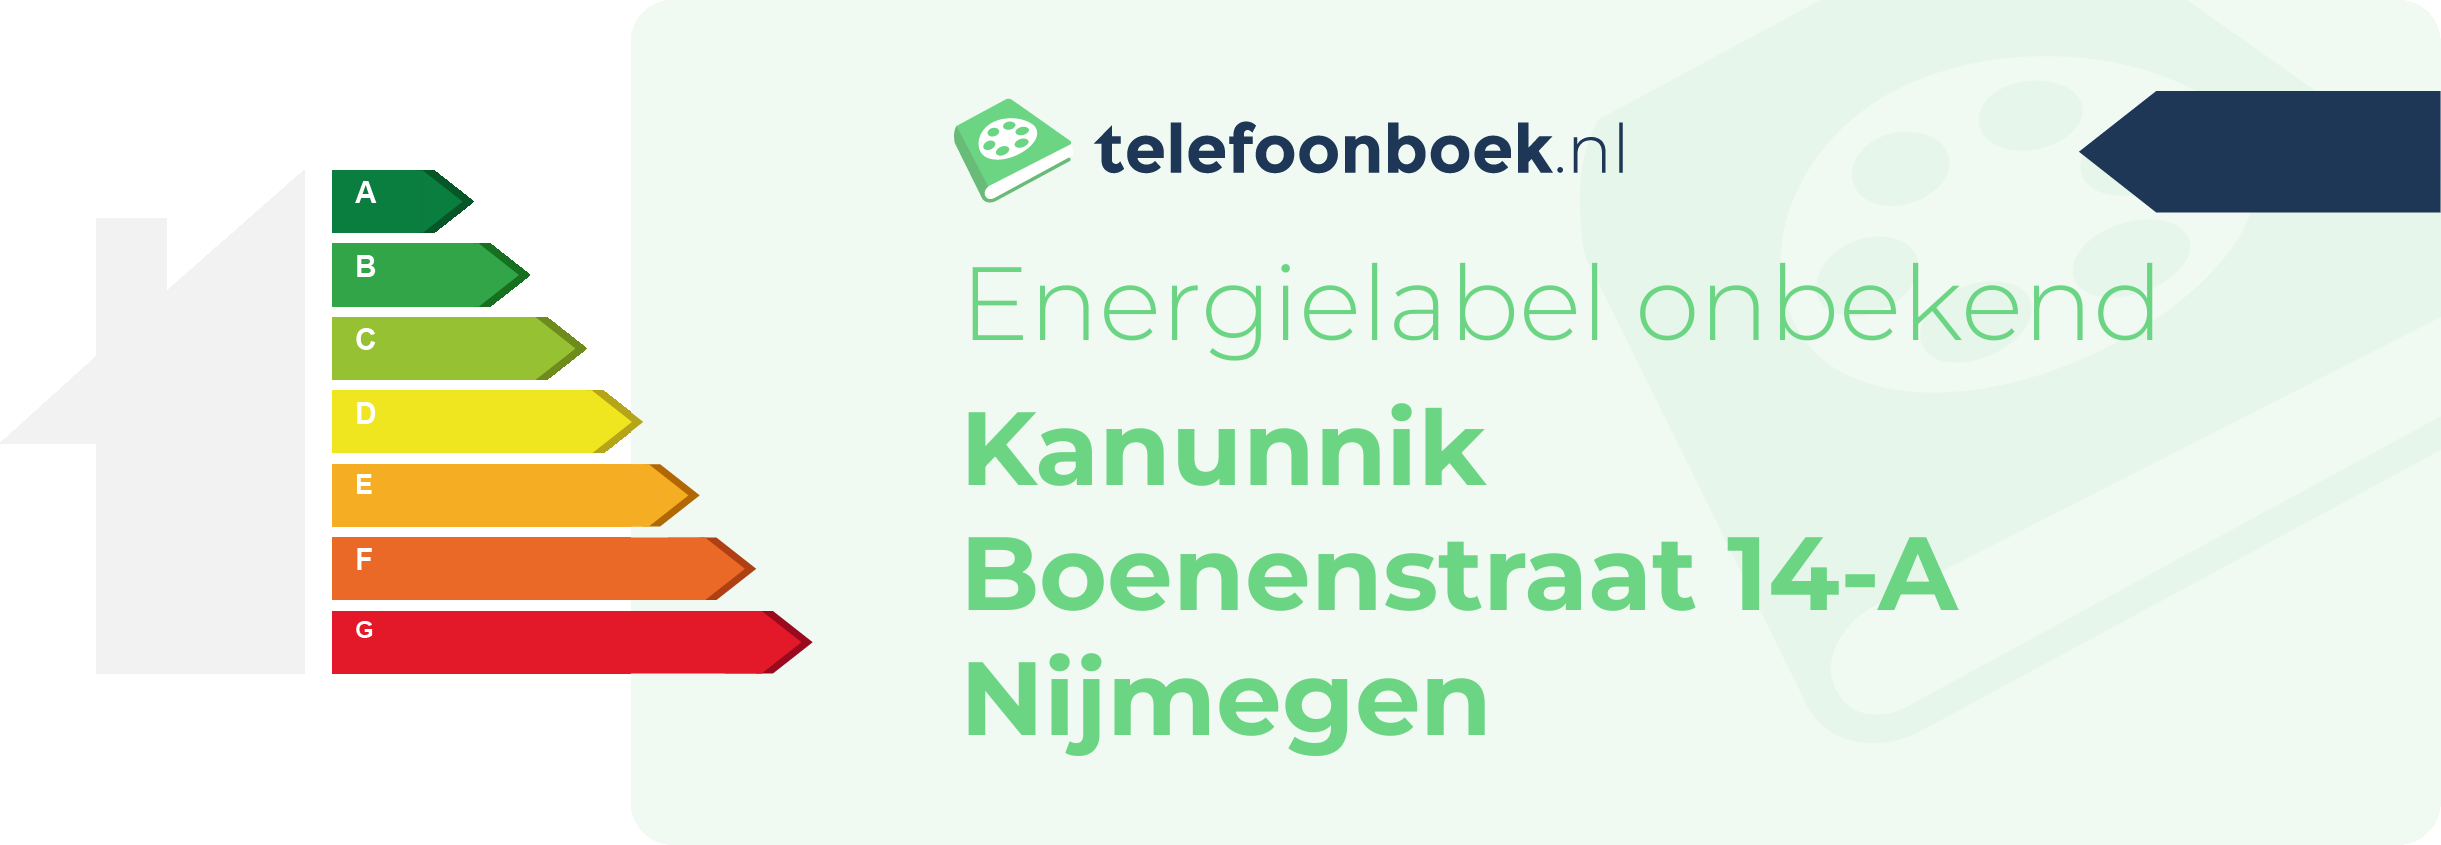 Energielabel Kanunnik Boenenstraat 14-A Nijmegen